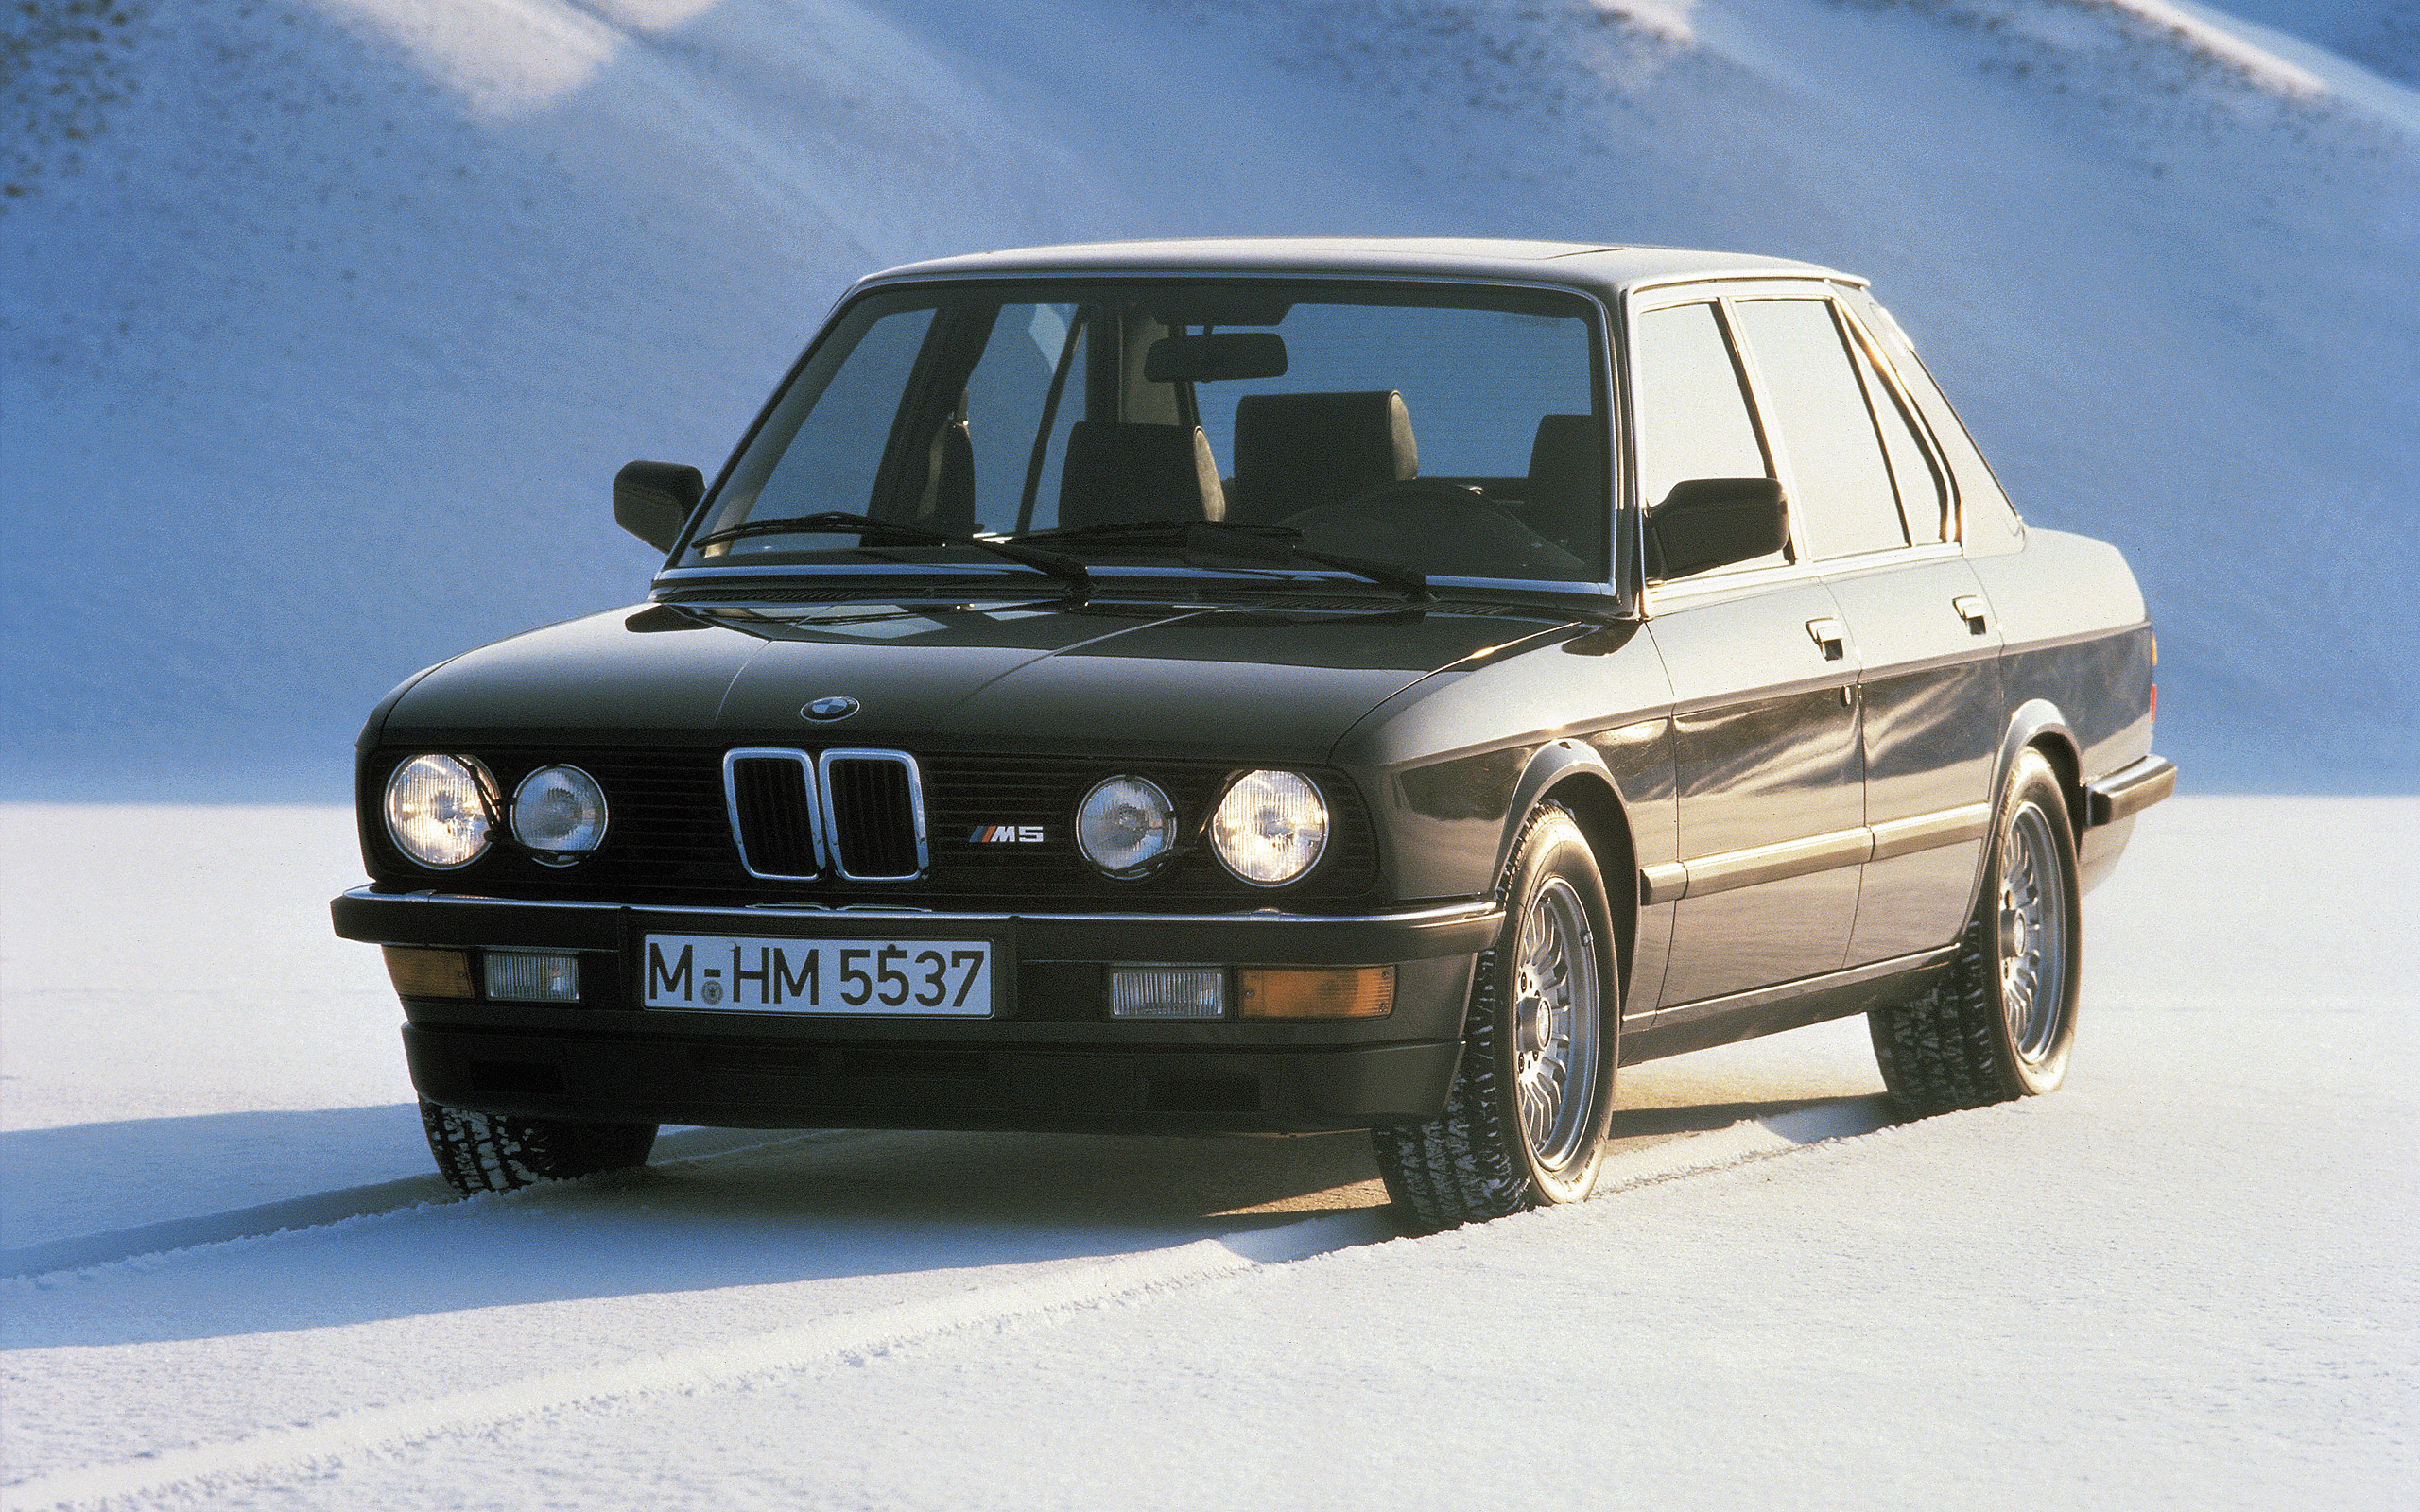  1987 BMW M5 Wallpaper.